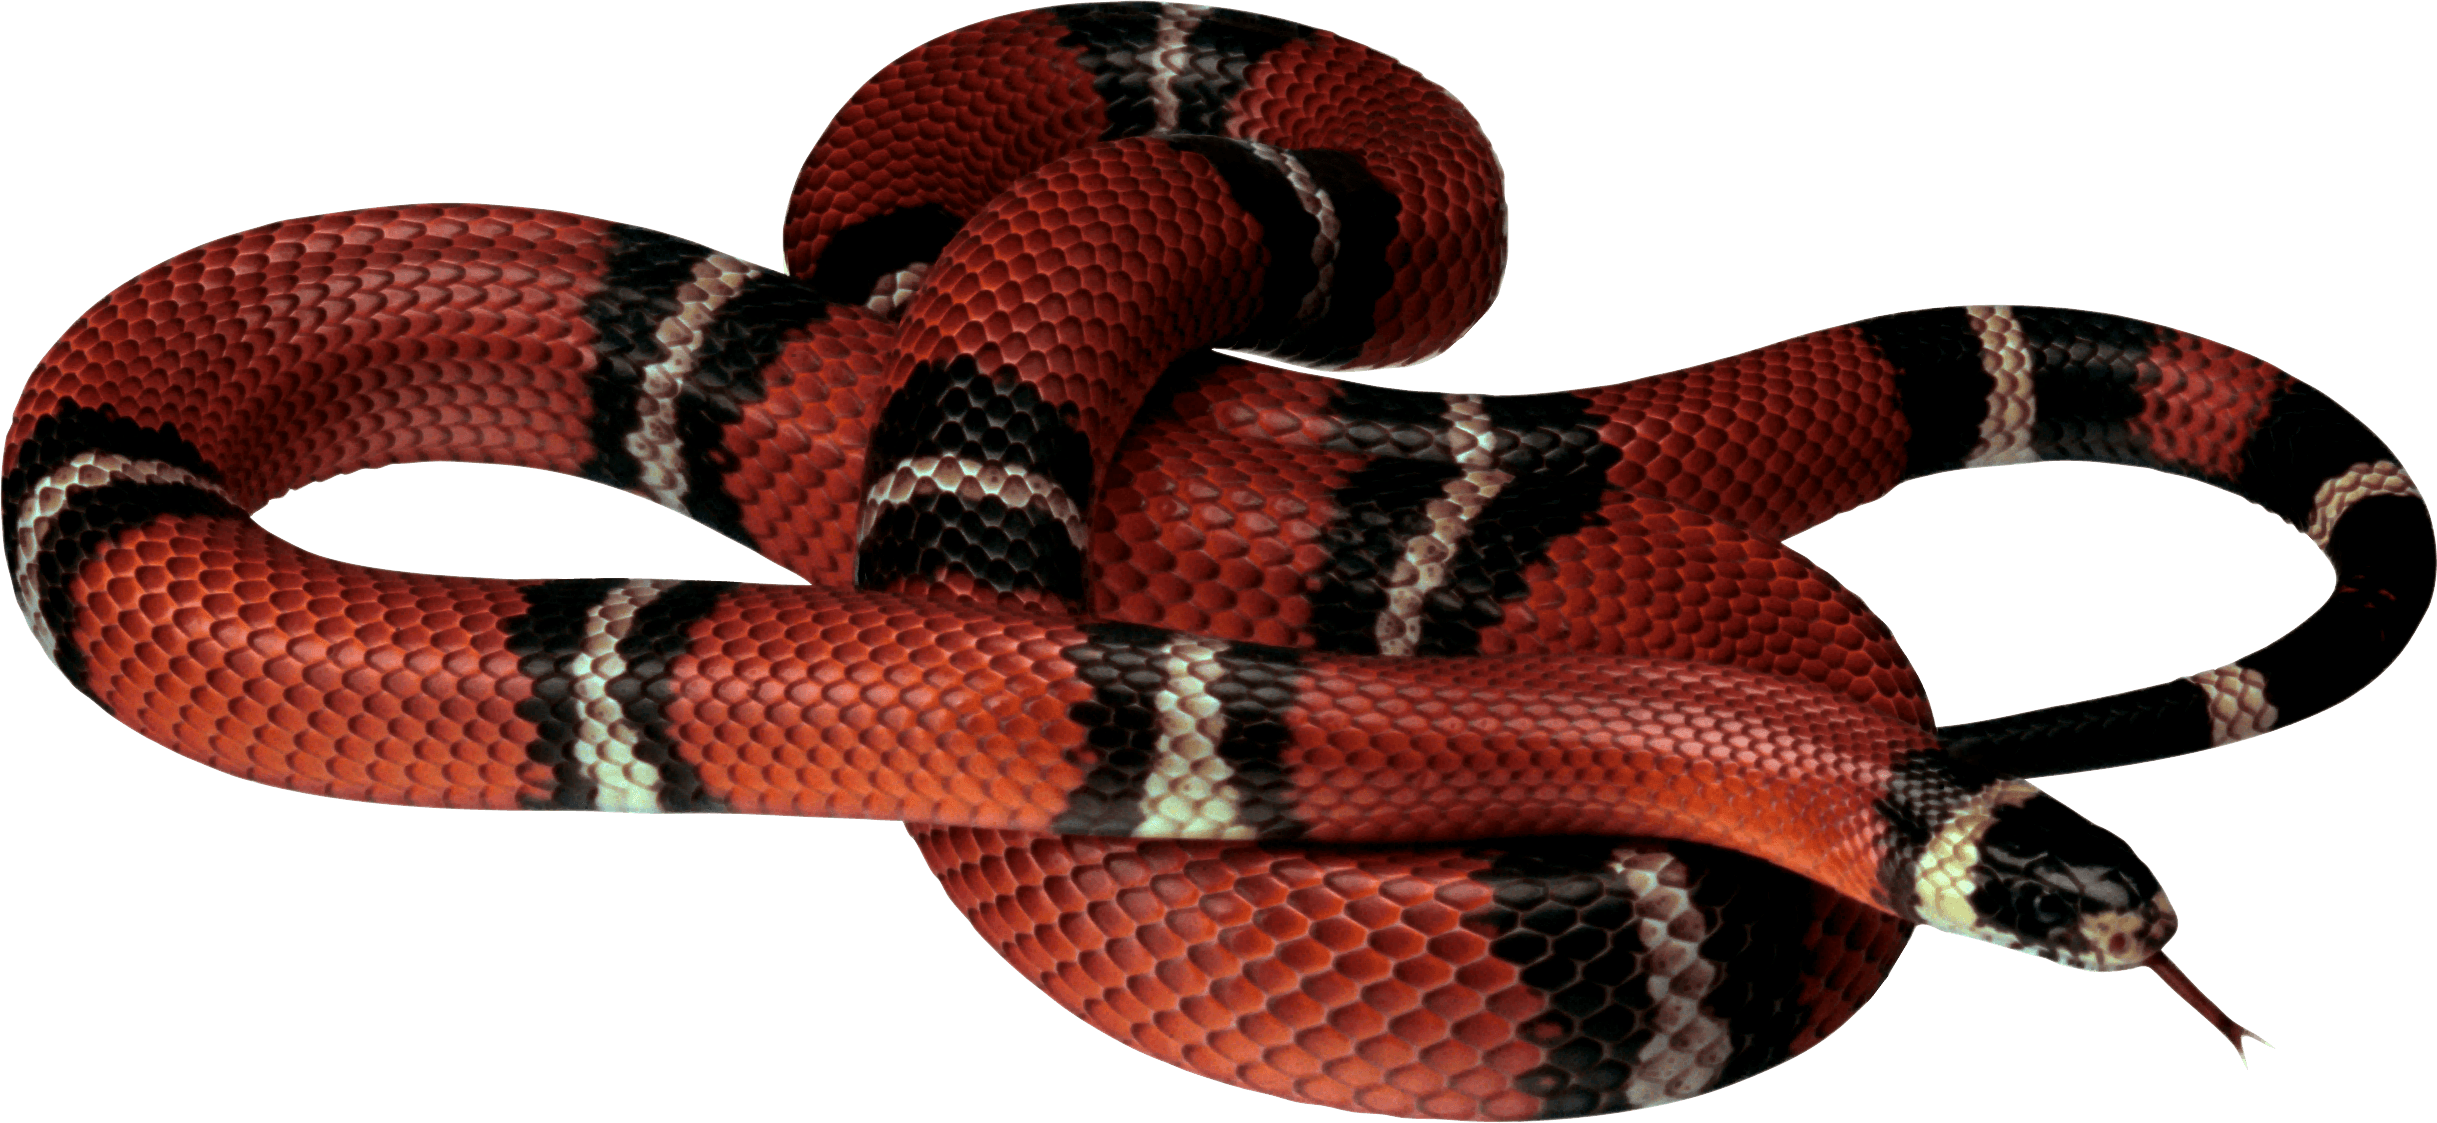 False Coral Snake PNG Image